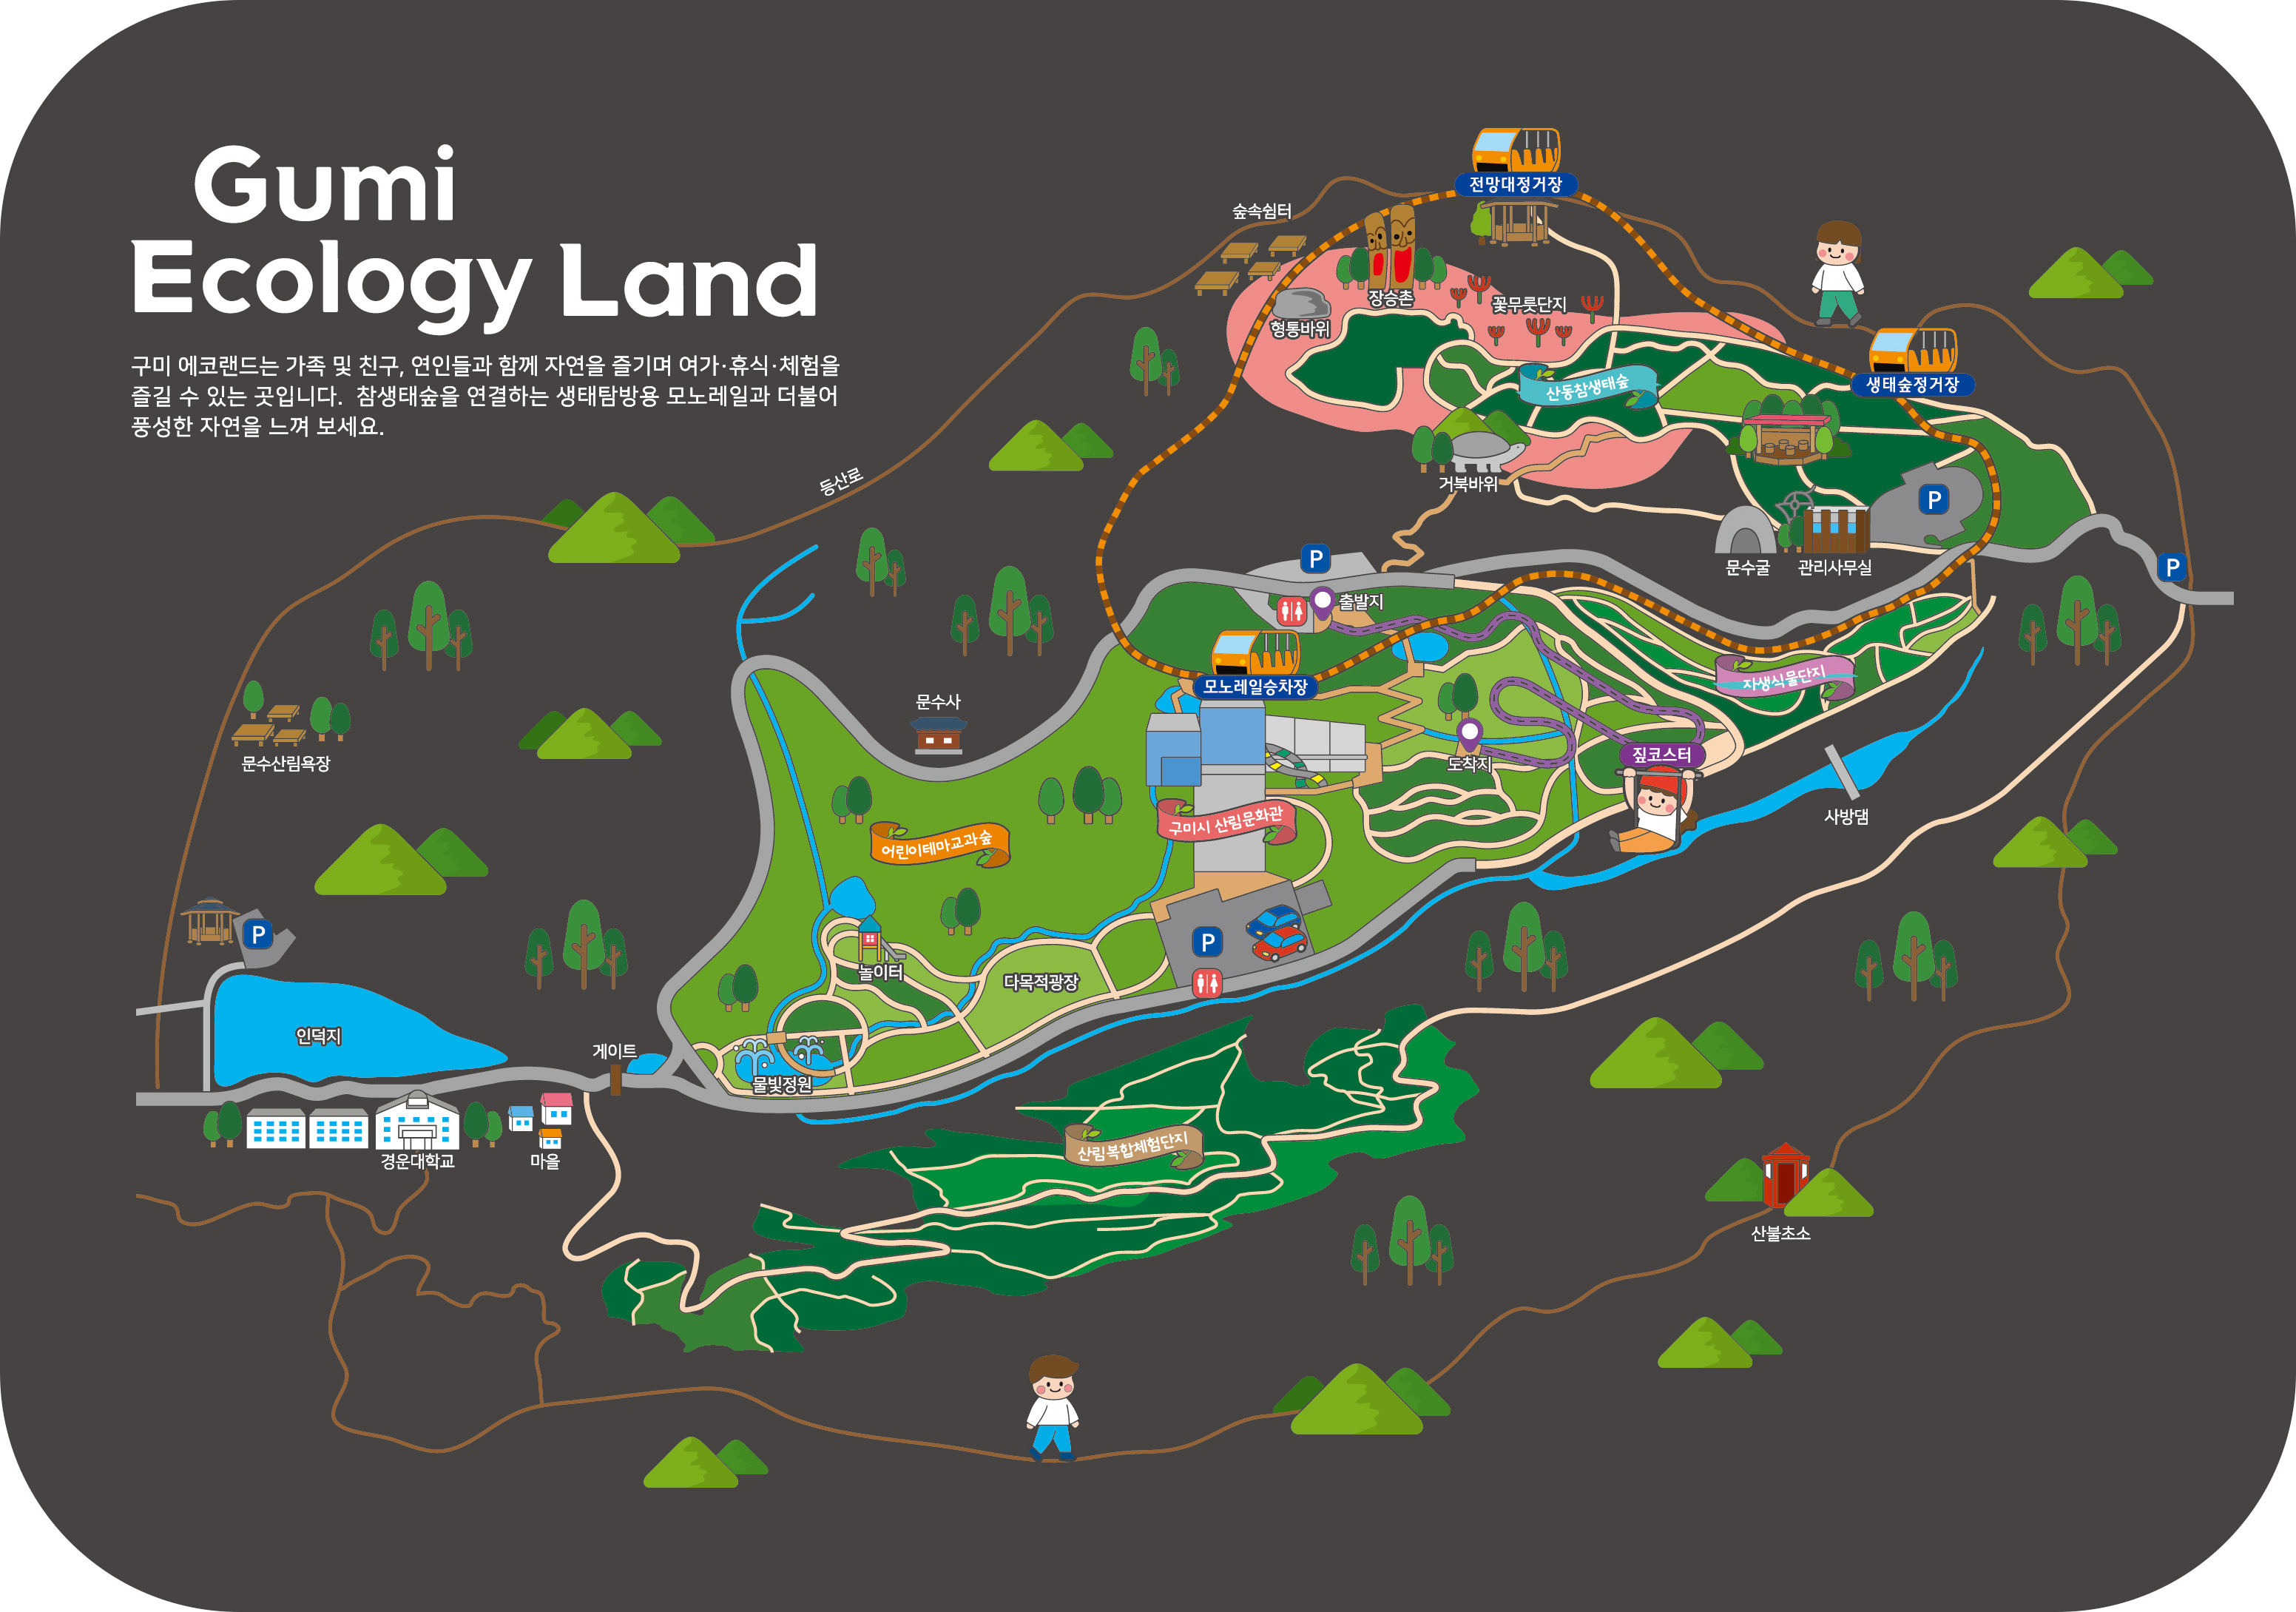 
		구미에코랜드 종합안내도입니다. Gumi Eco Land 구미에코랜드는 가족 및 친구, 연인들과 함께 자연을 즐기며 여가·휴식·체험을 즐길 수 있는 곳입니다. 
		참생태숲을 연결하는 모노레일을 타며 더욱더 풍성한 자연을 느낄 수 있습니다.